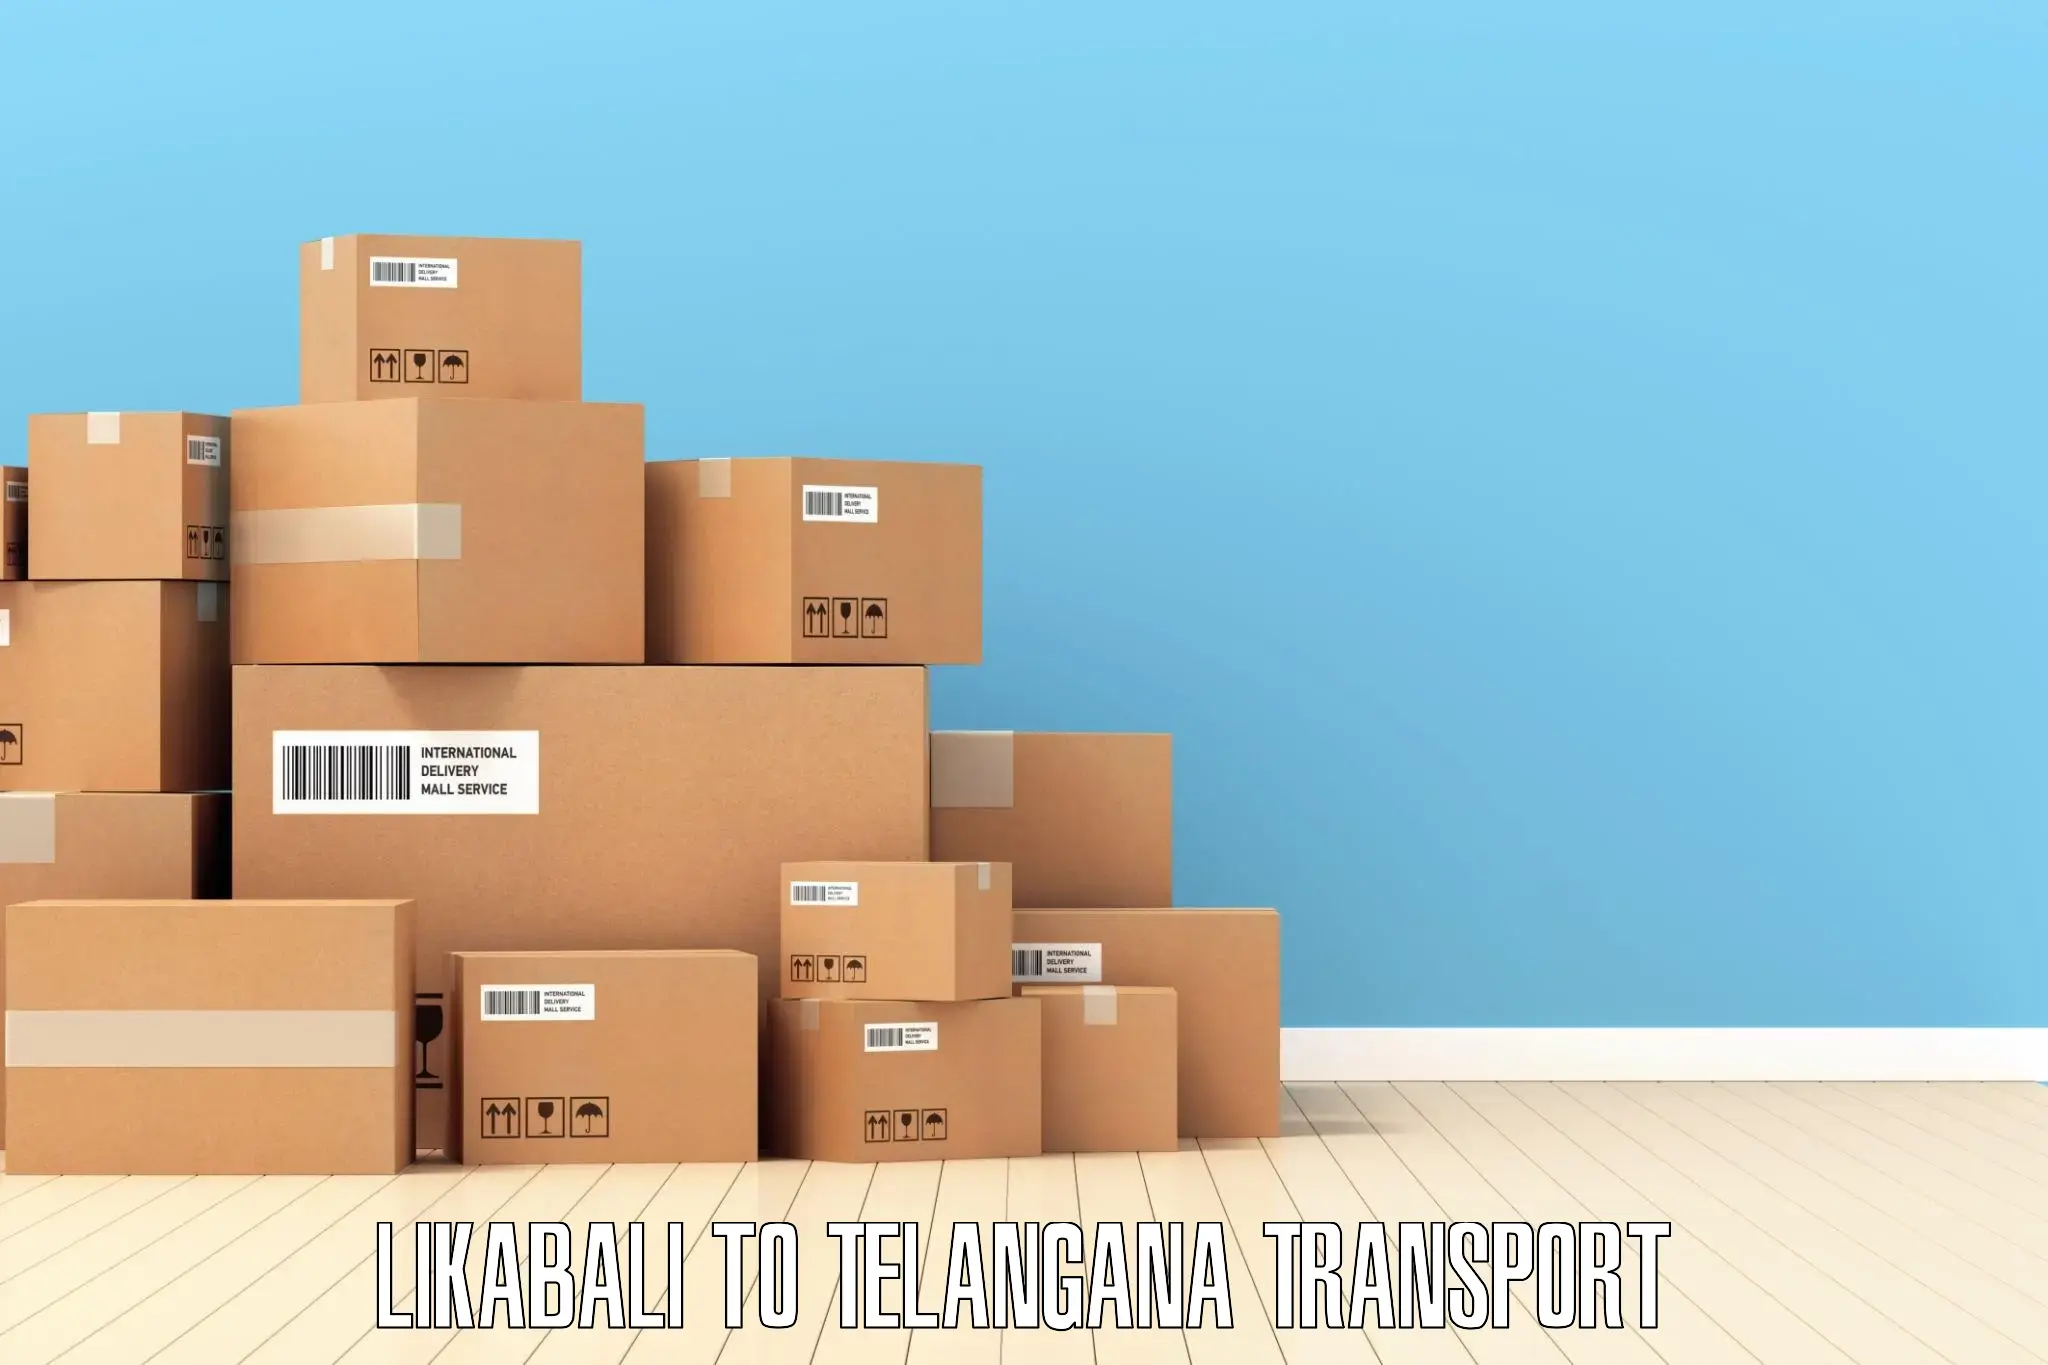 Road transport online services Likabali to Parkal